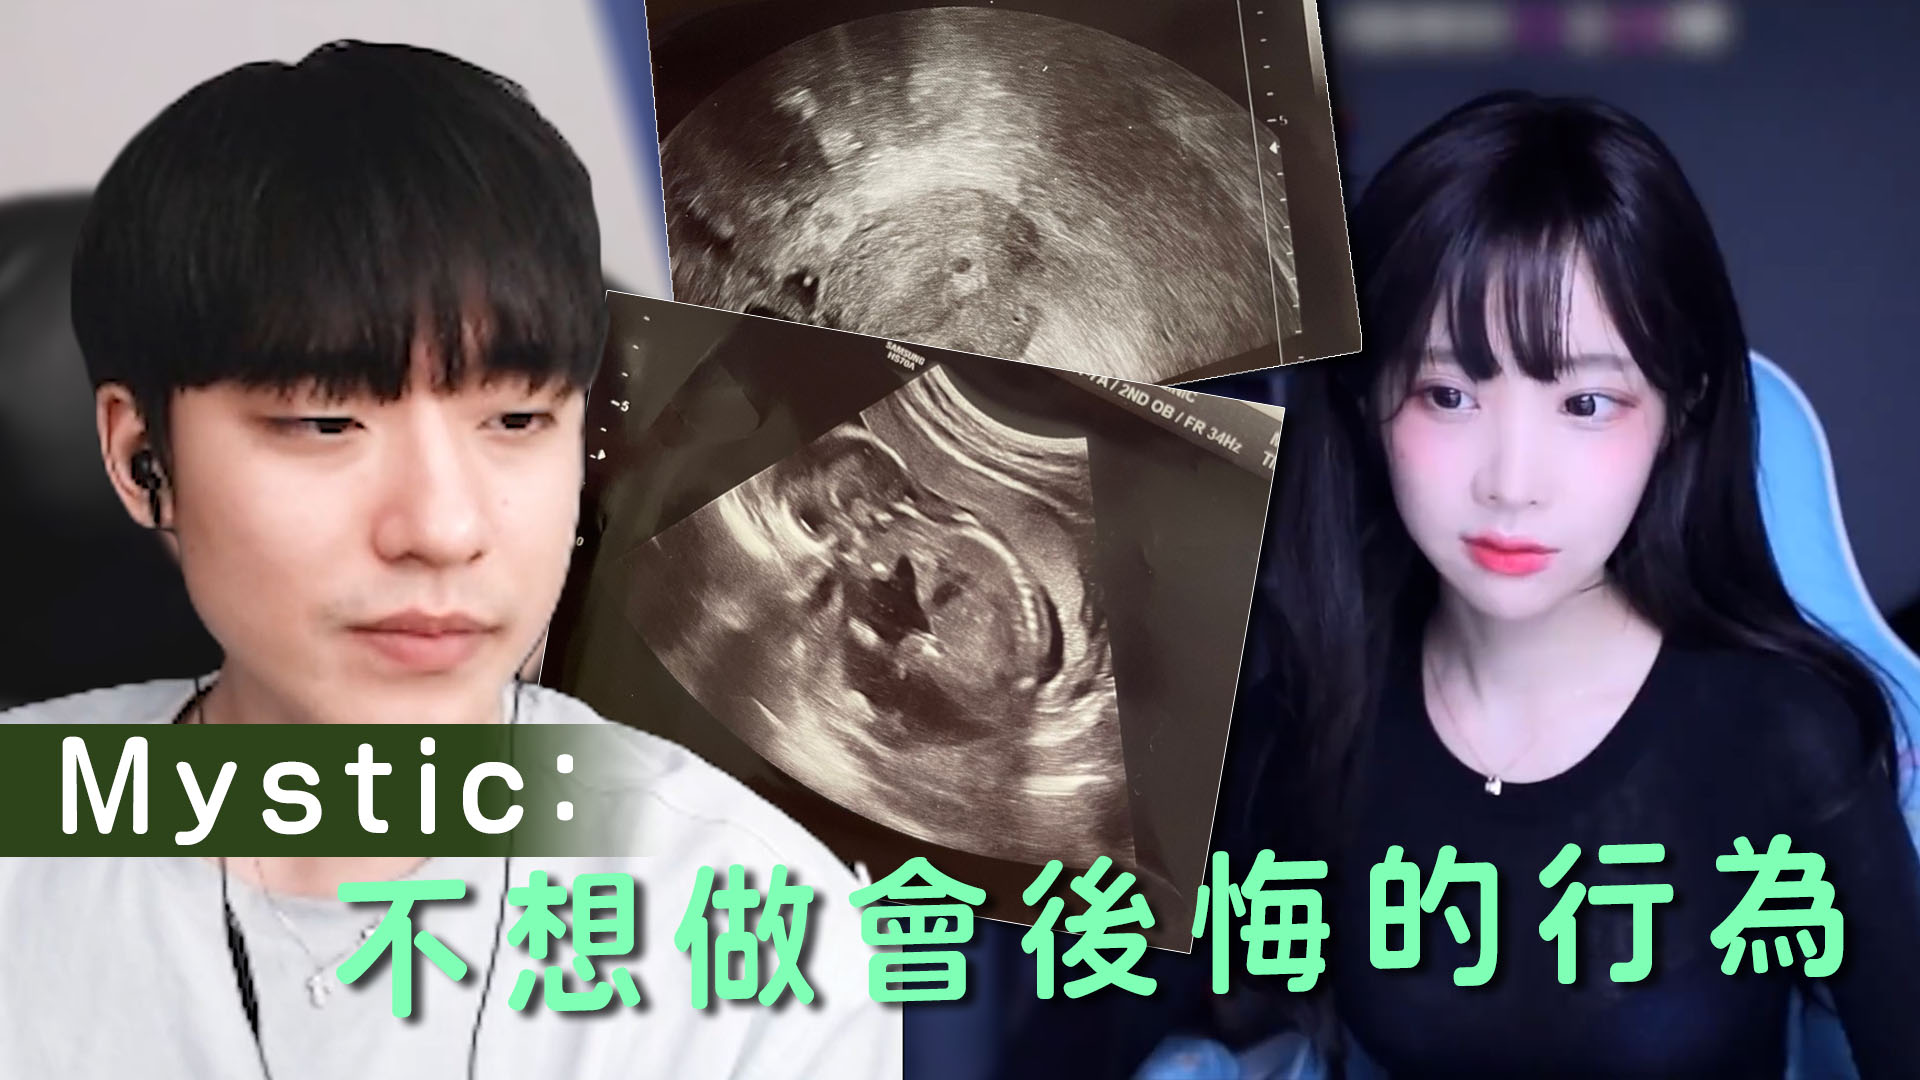 高顏值電競選手陳聖俊被前女友爆料 疑強姦兼迫墮胎